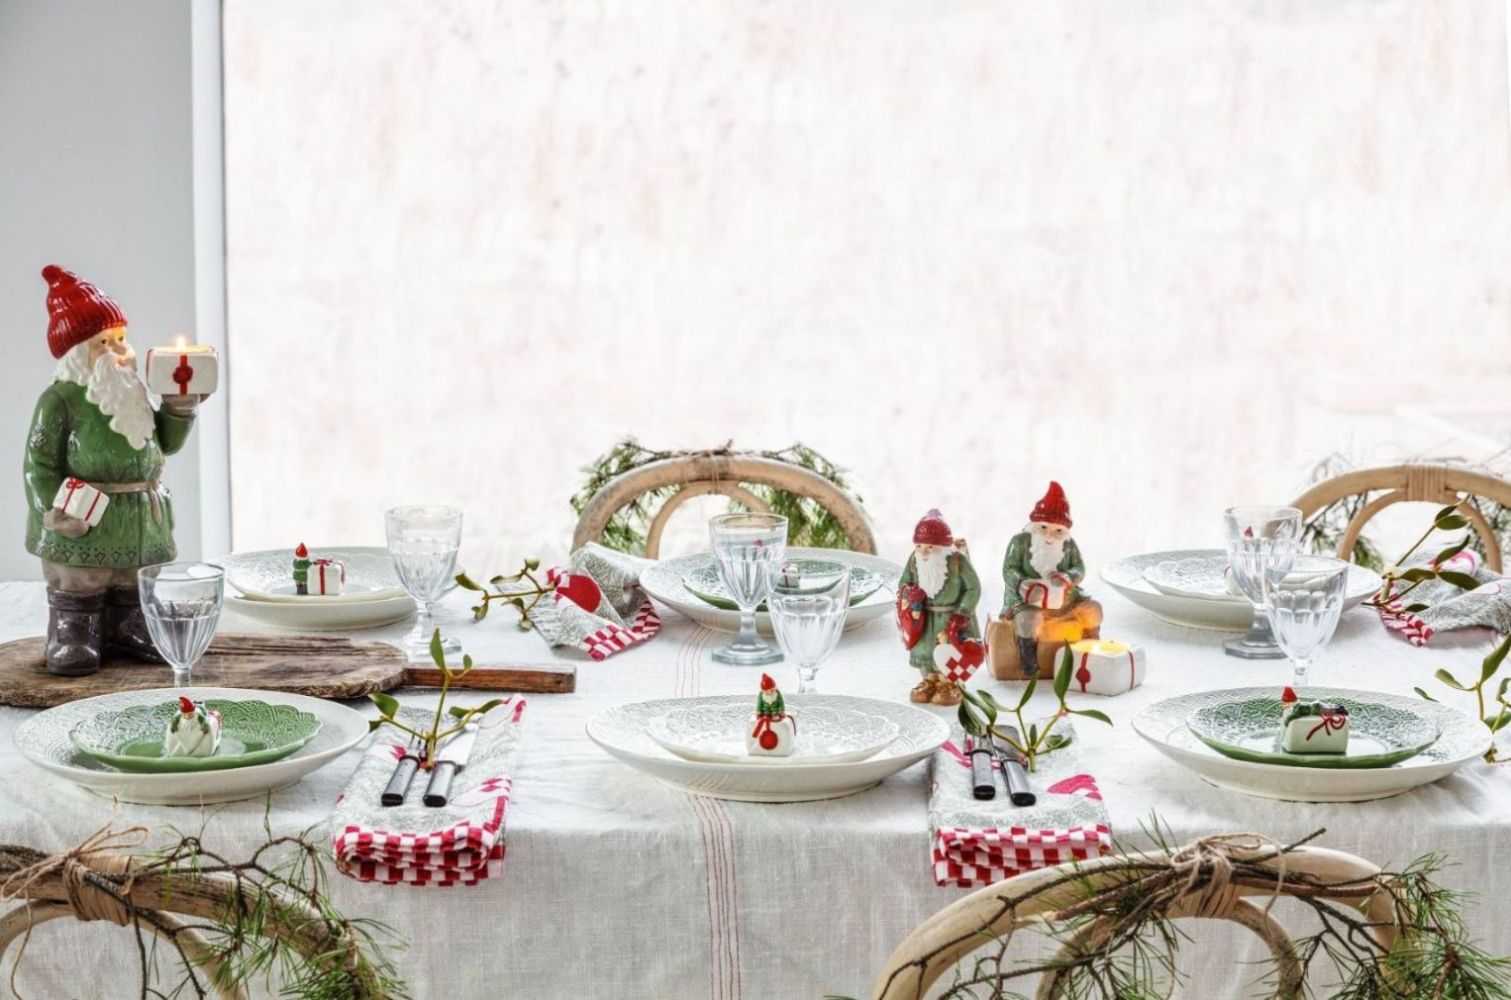 Julkalas lilltomten en porslinsfigur i grågrönt, vitt och rött från Cult design, höjd 17 cm.